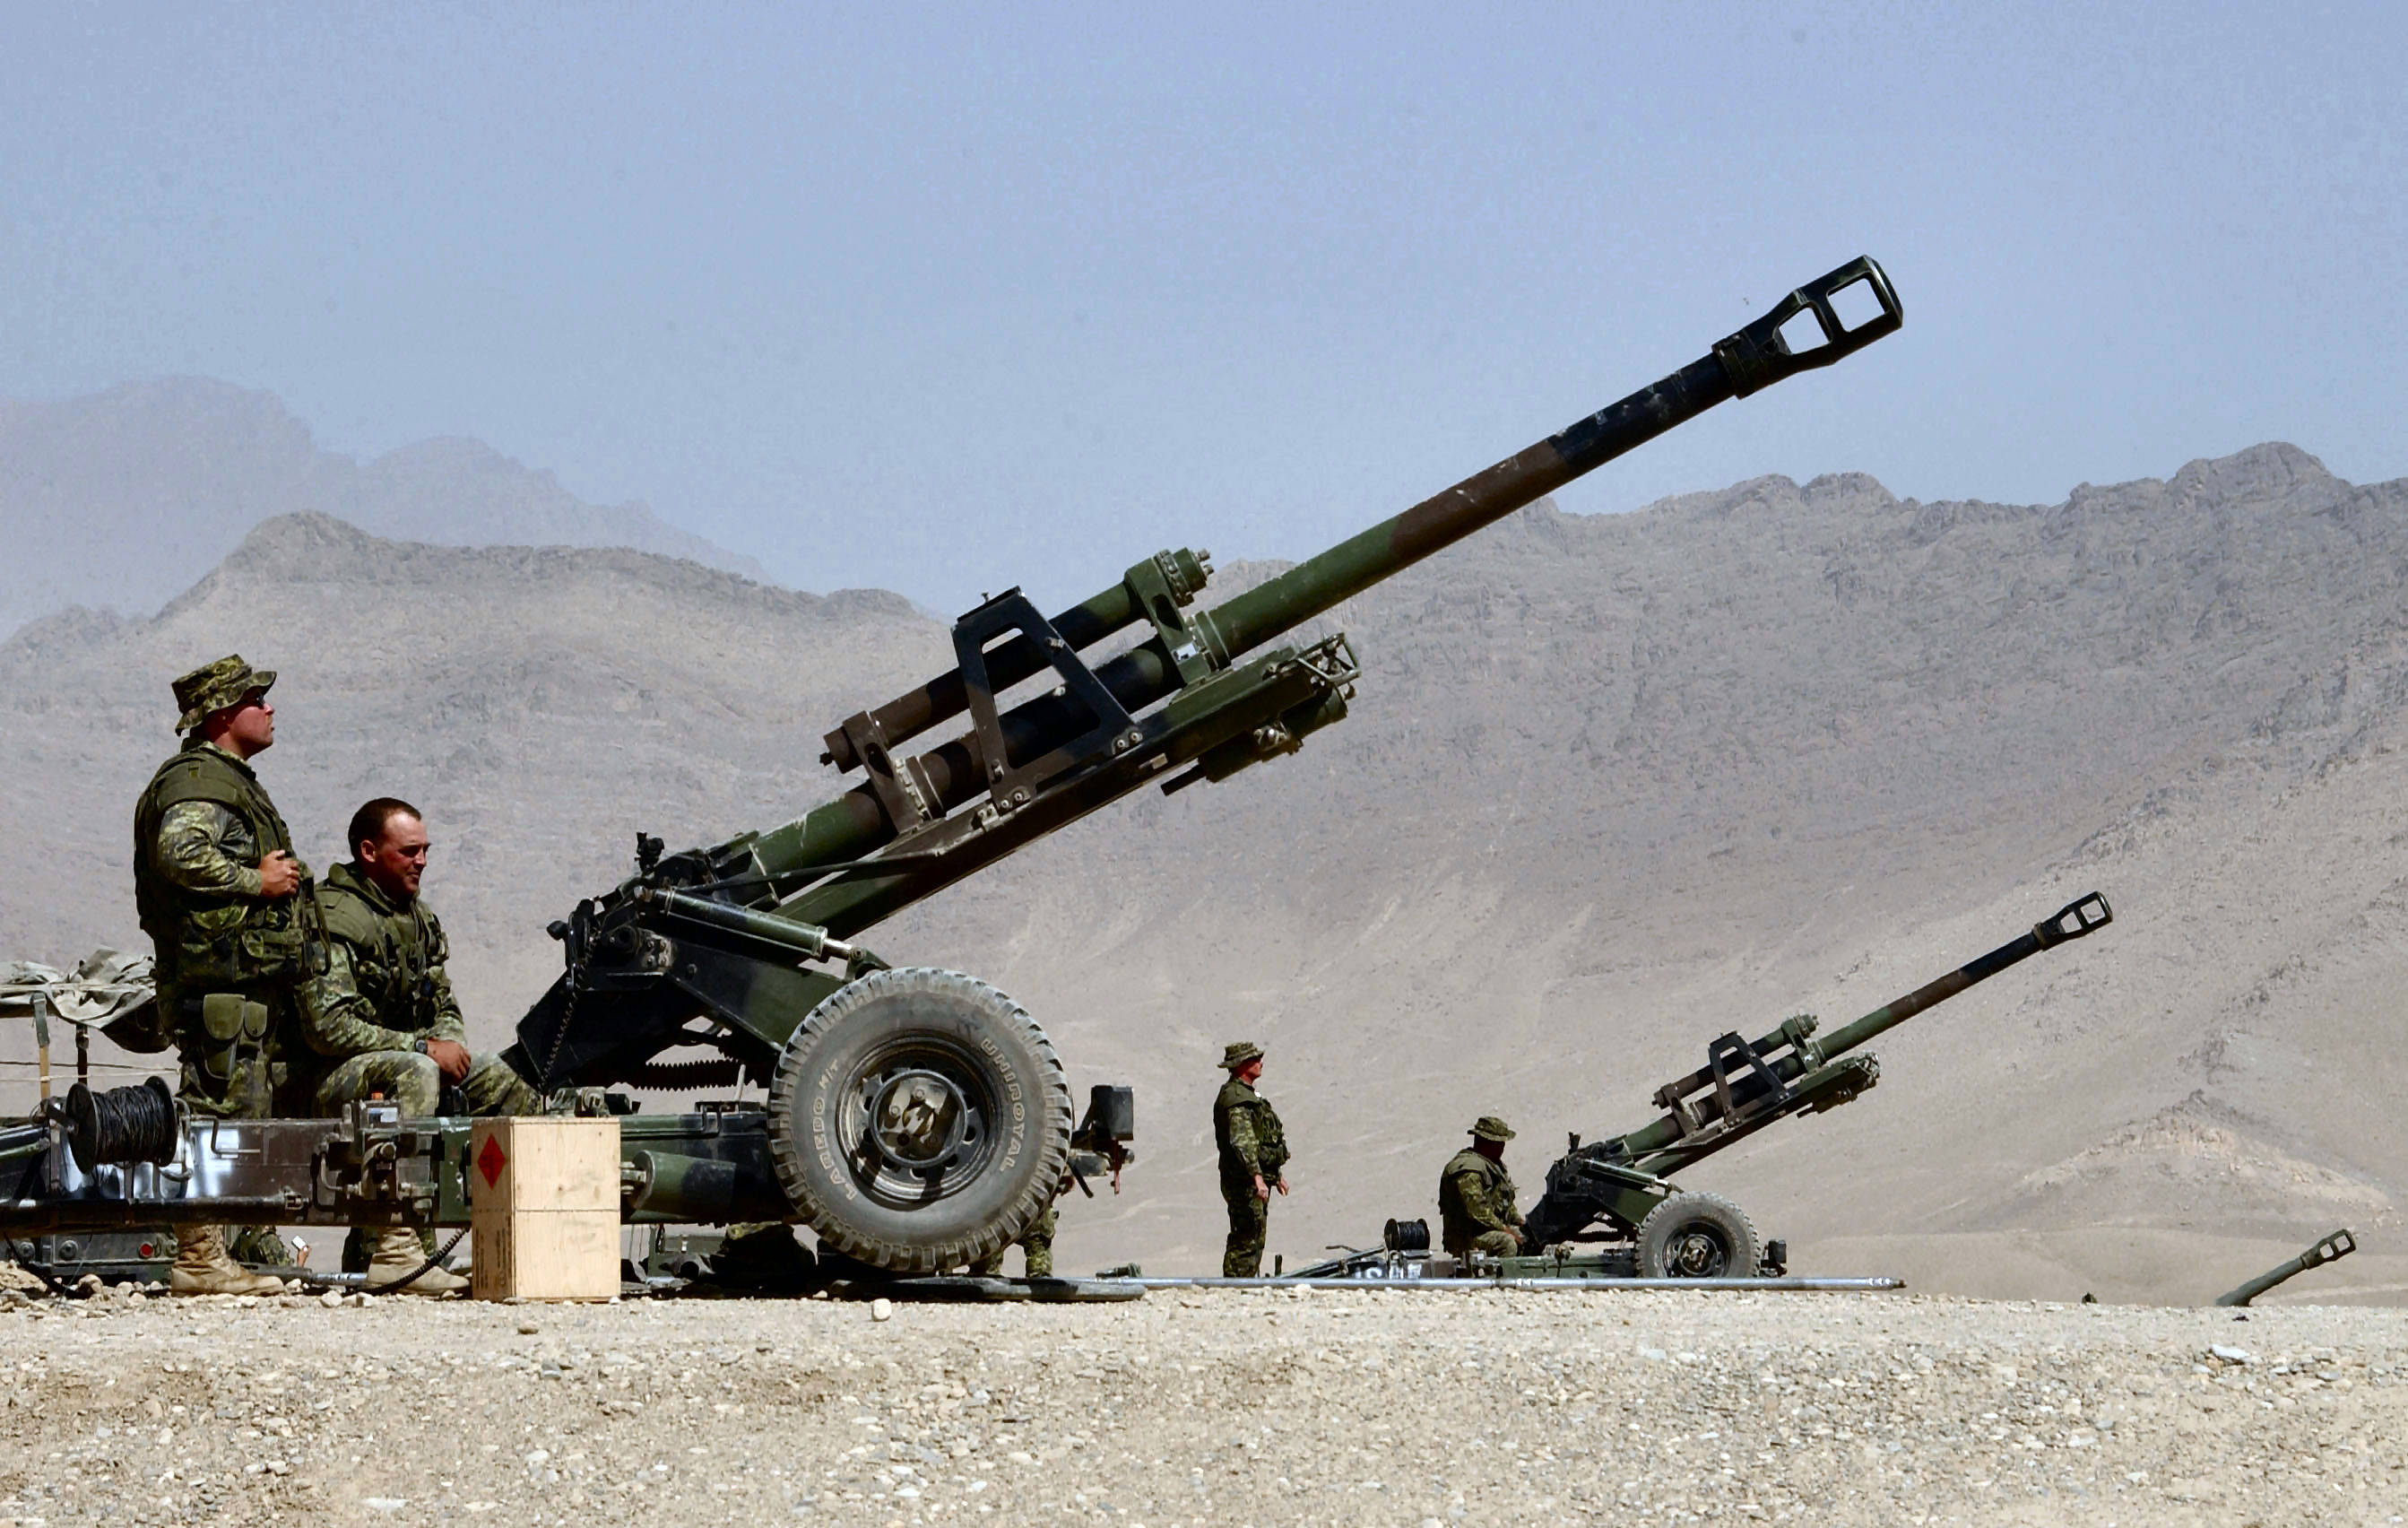 原创法国lg1榴弹炮,对多国实现出口,打造经典法式装备!